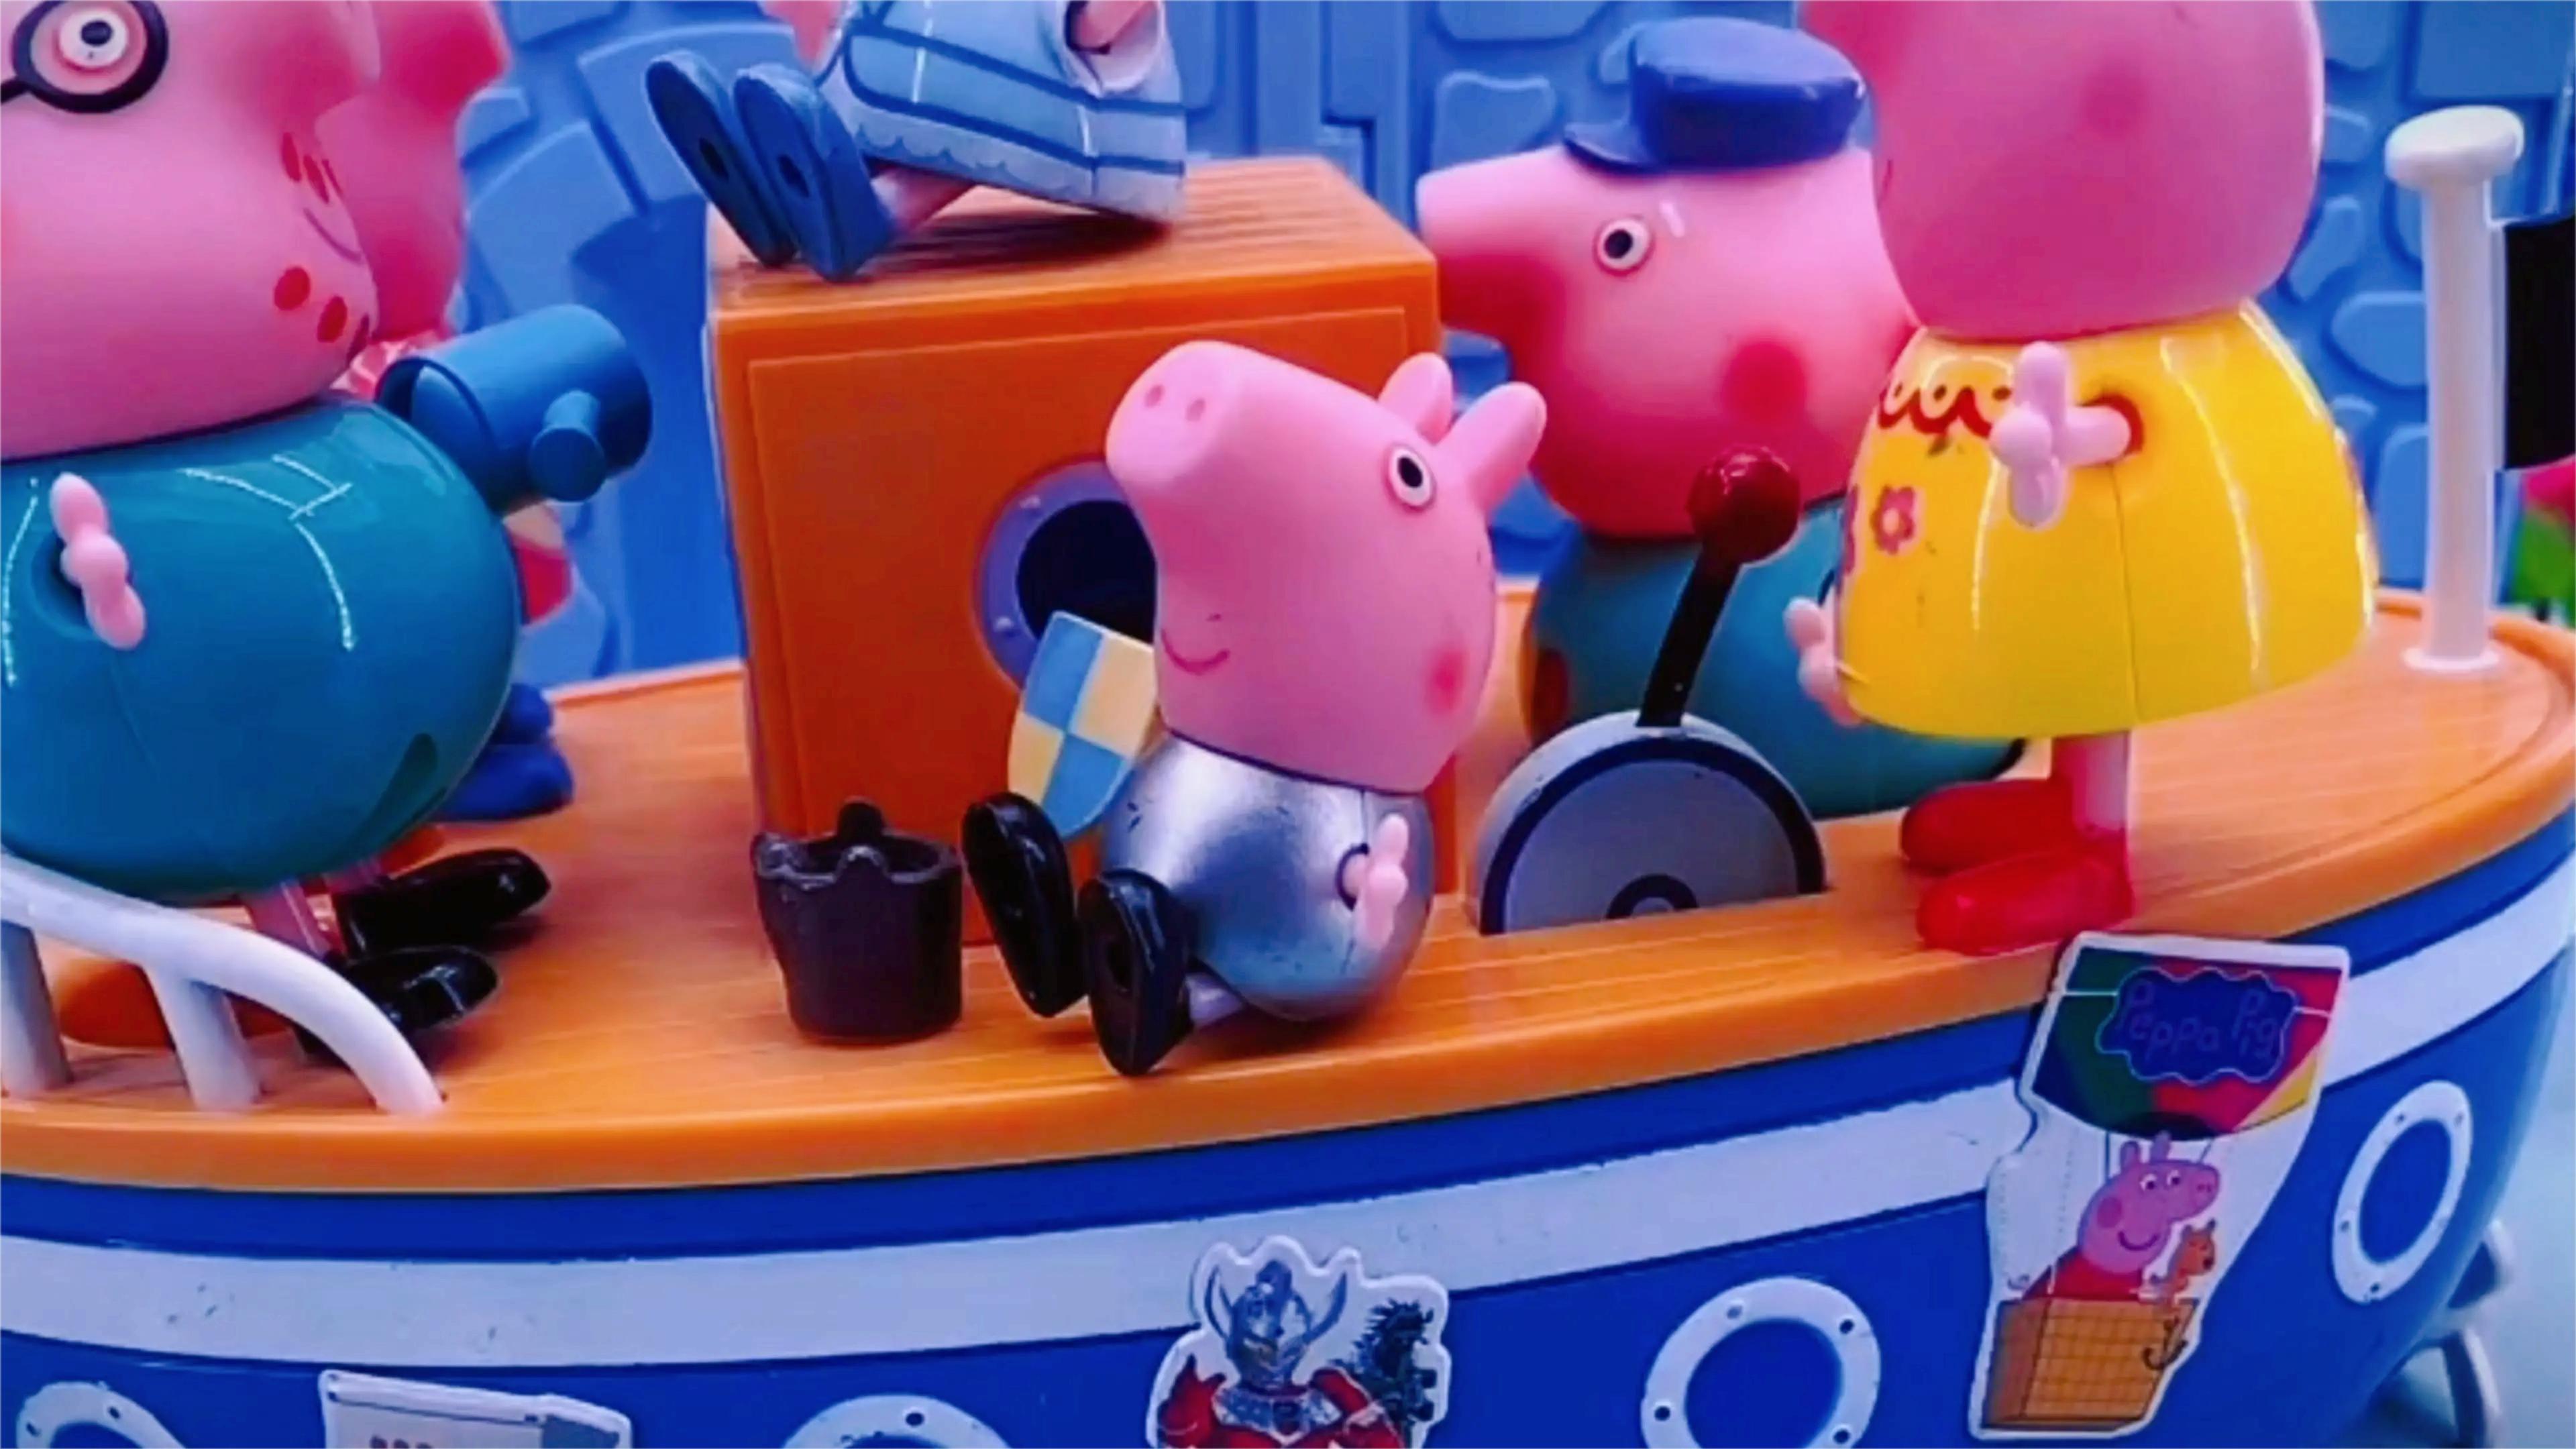 182 玩具动画:小猪佩奇玩具故事,摩天轮轮船玩具,儿童益智早教动画